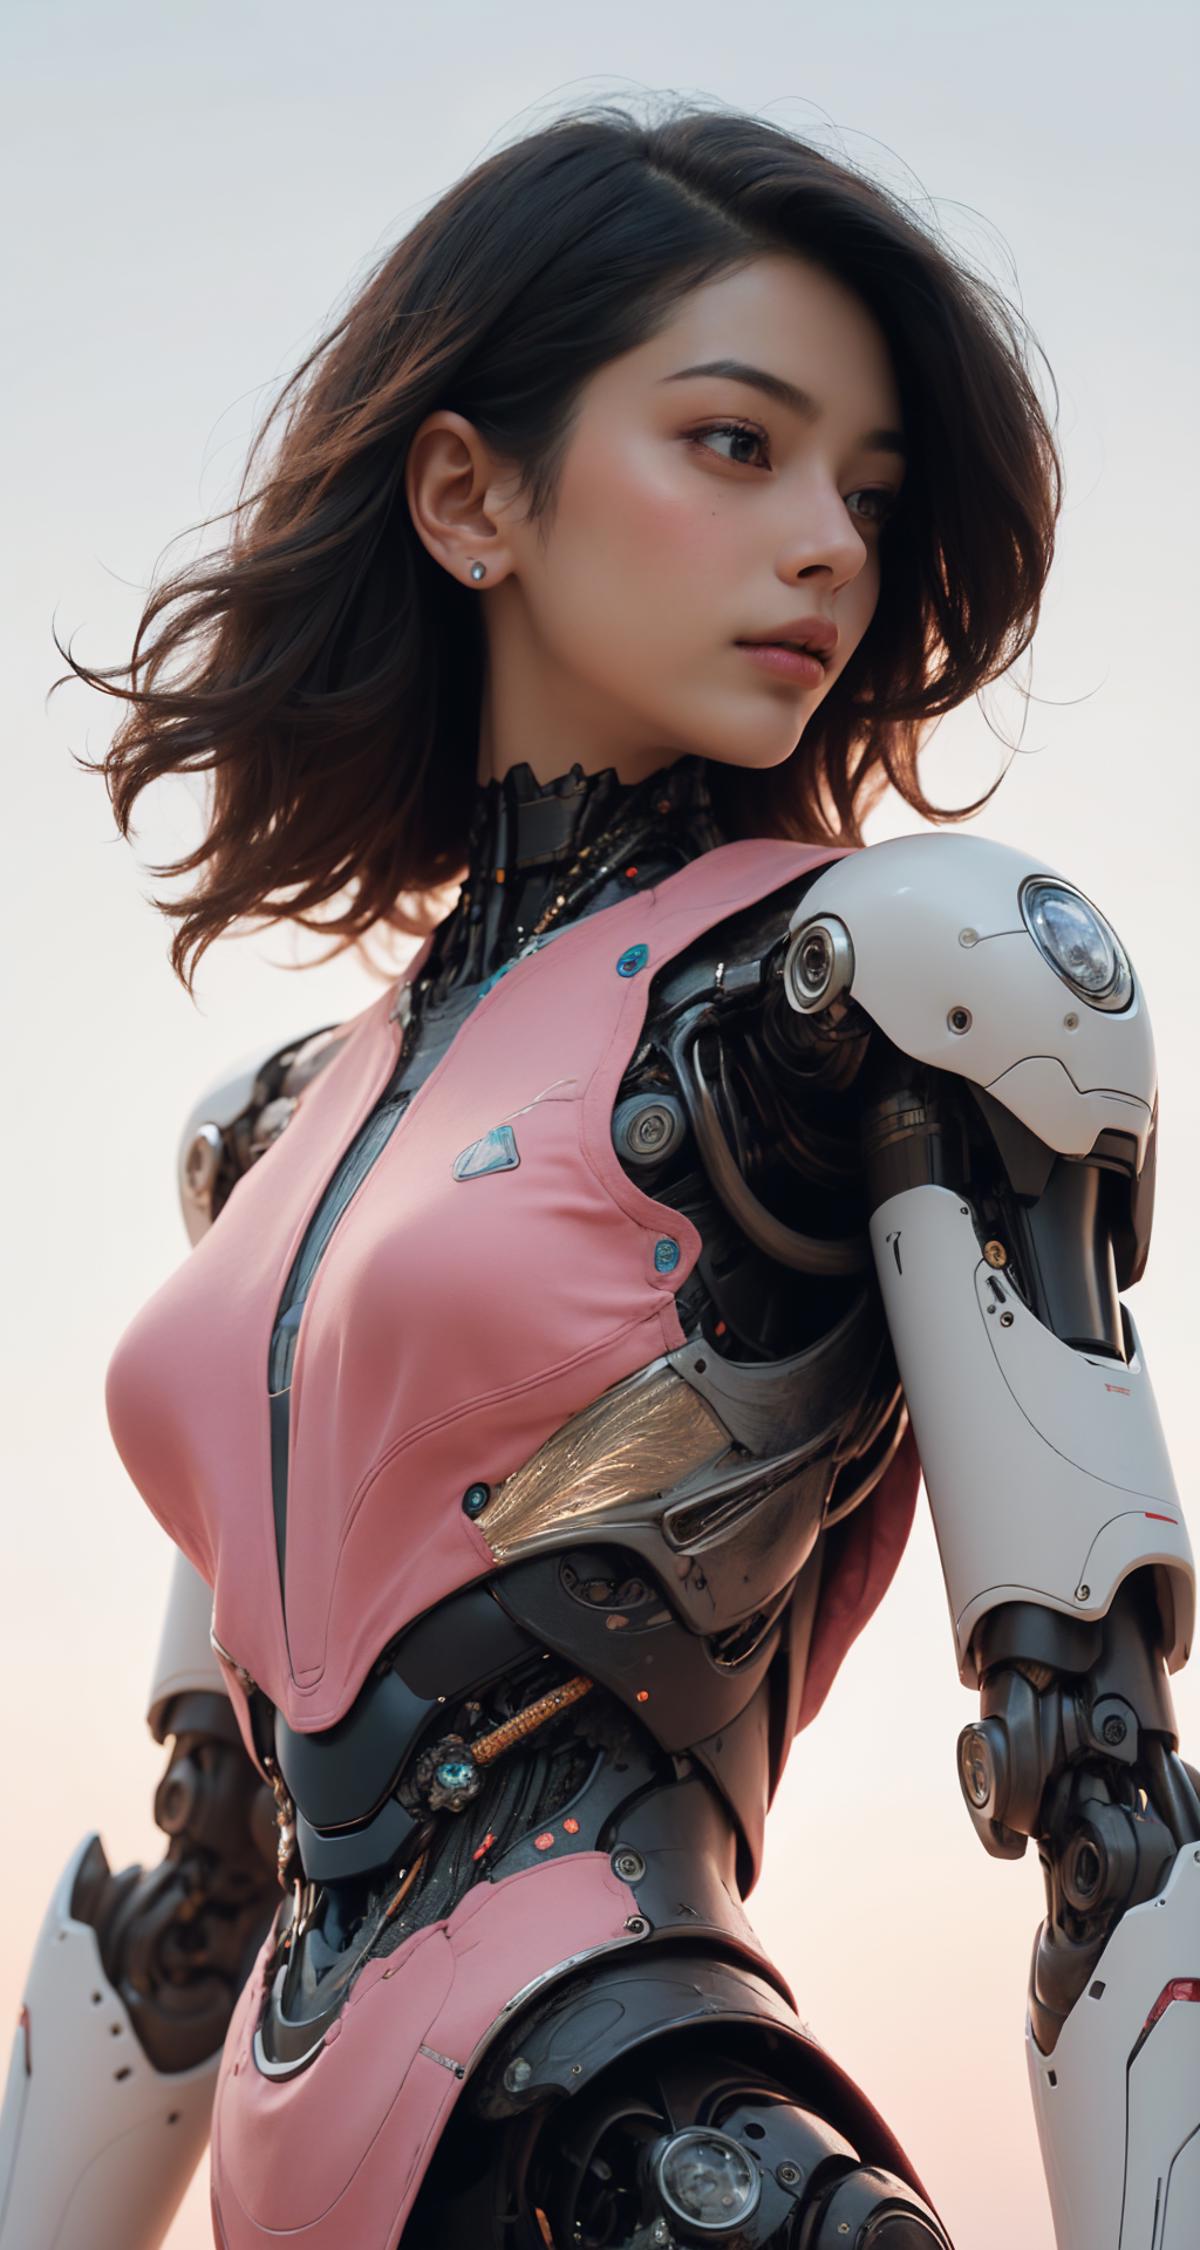 NijiArmor LORA - suits / armors / mechas image by okamuron